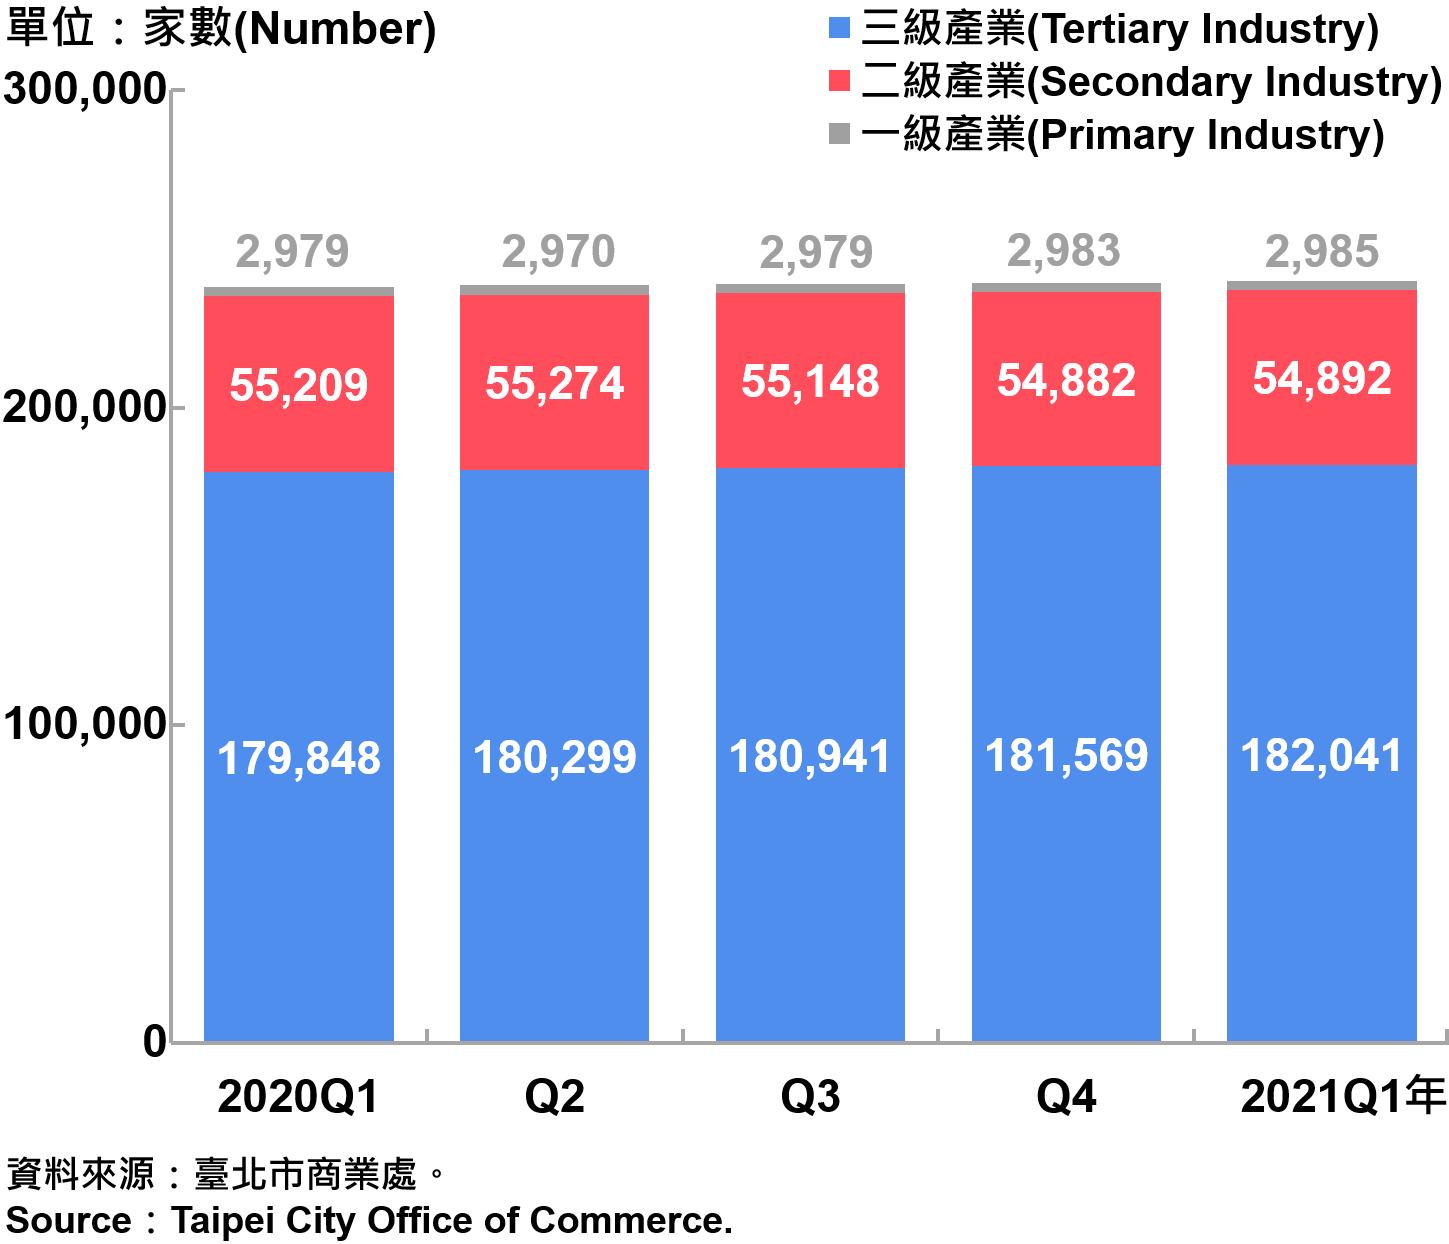 臺北市一二三級產業登記家數—2021Q1 Number of Primary , Secondary and Tertiary Industry in Taipei City—2021Q1